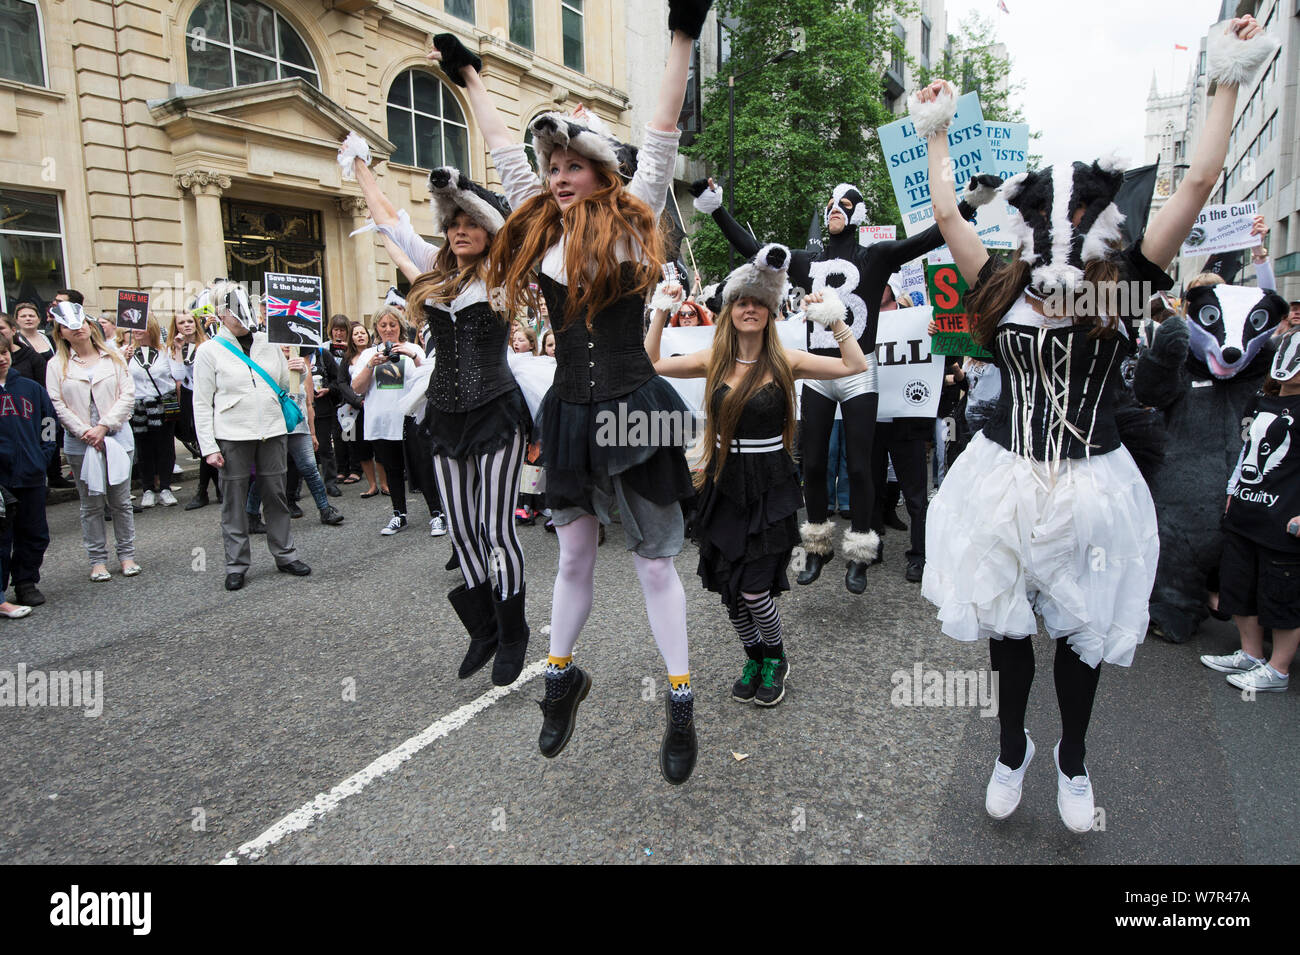 Tänzer aus der kunstvollen Badger Gruppe, Tanzen in Badger Kostüme, anti Badger cull März, London am 1. Juni 2013. Stockfoto